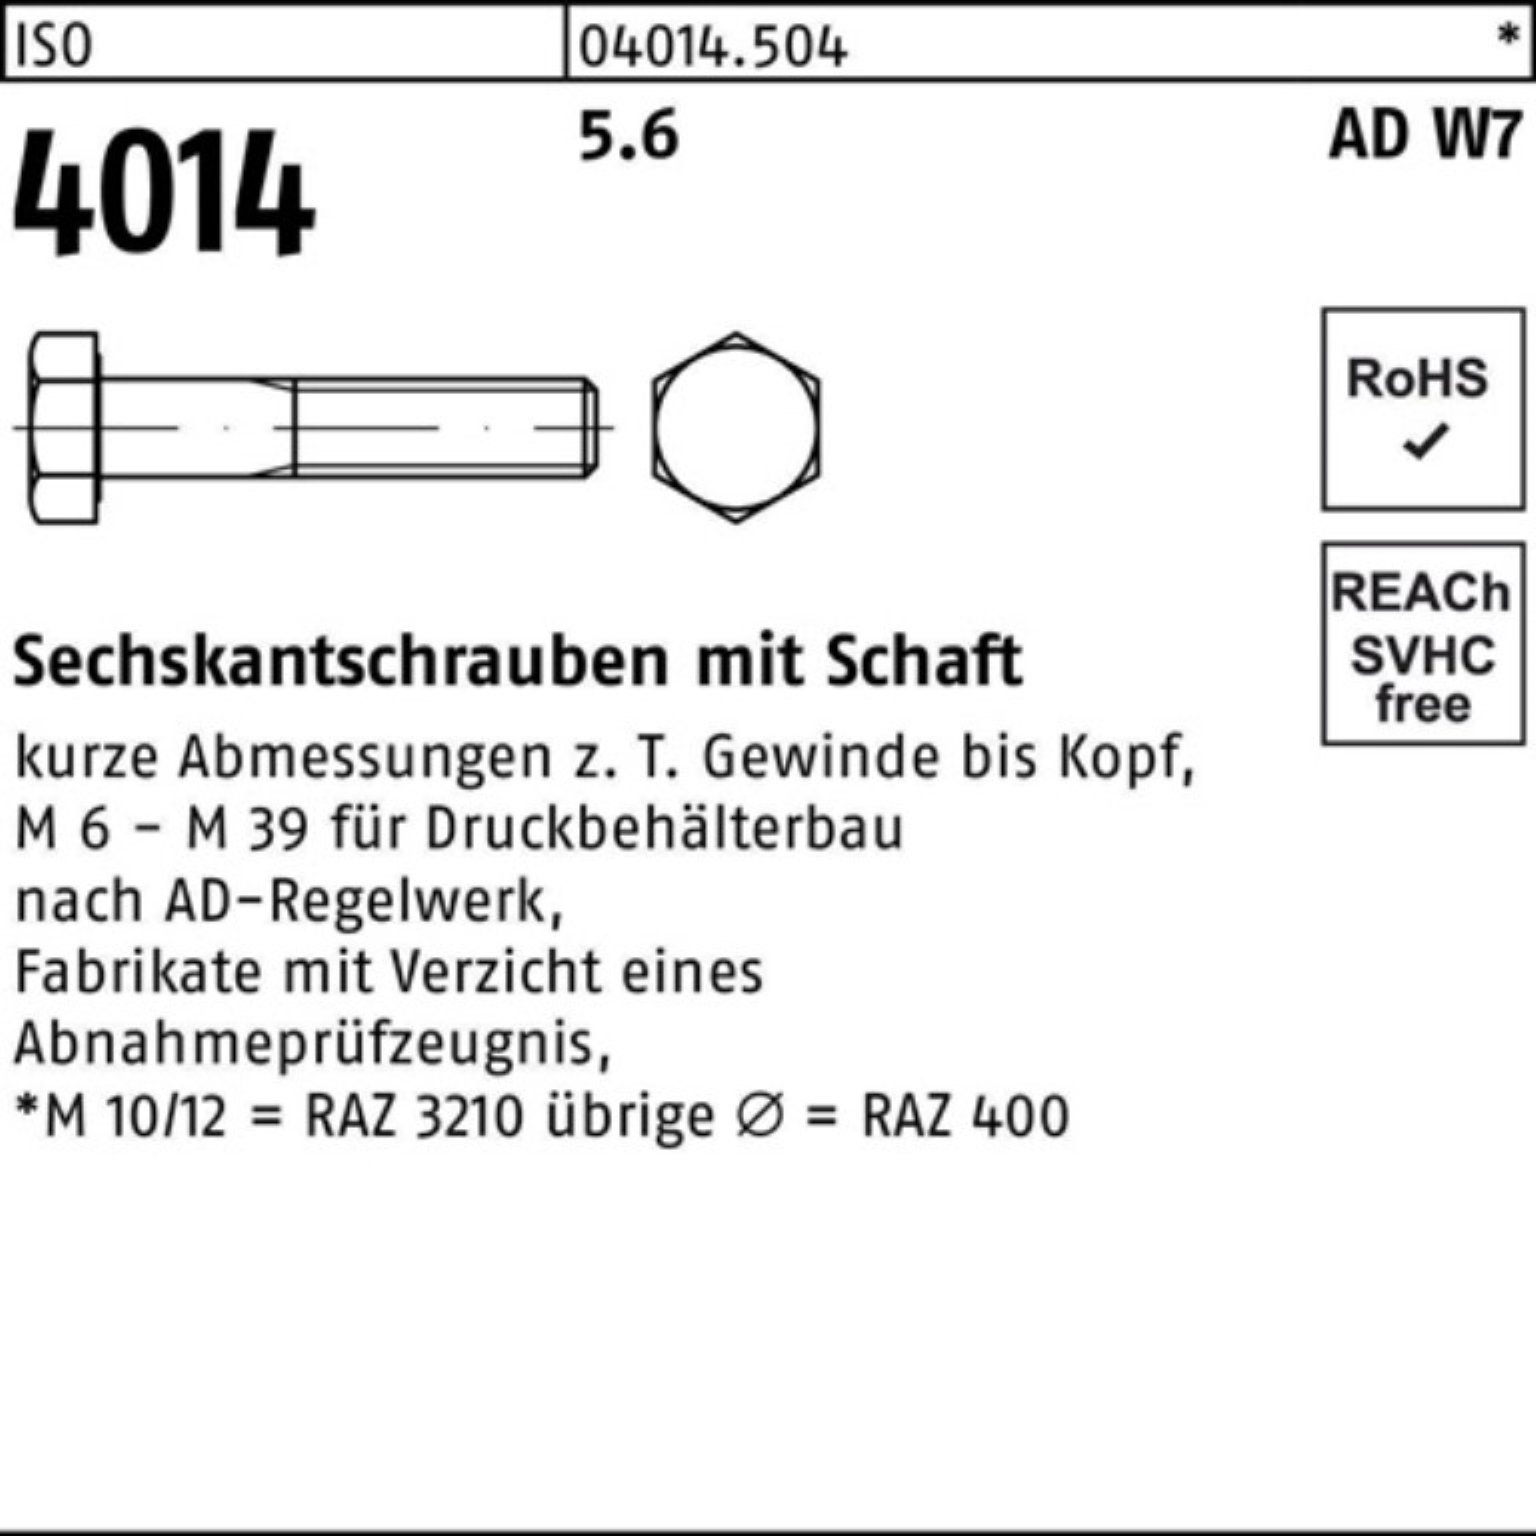 ISO Sechskantschraube 4014 110 5.6 Schaft M24x 100er Sechskantschraube 10 Stück W7 Bufab Pack